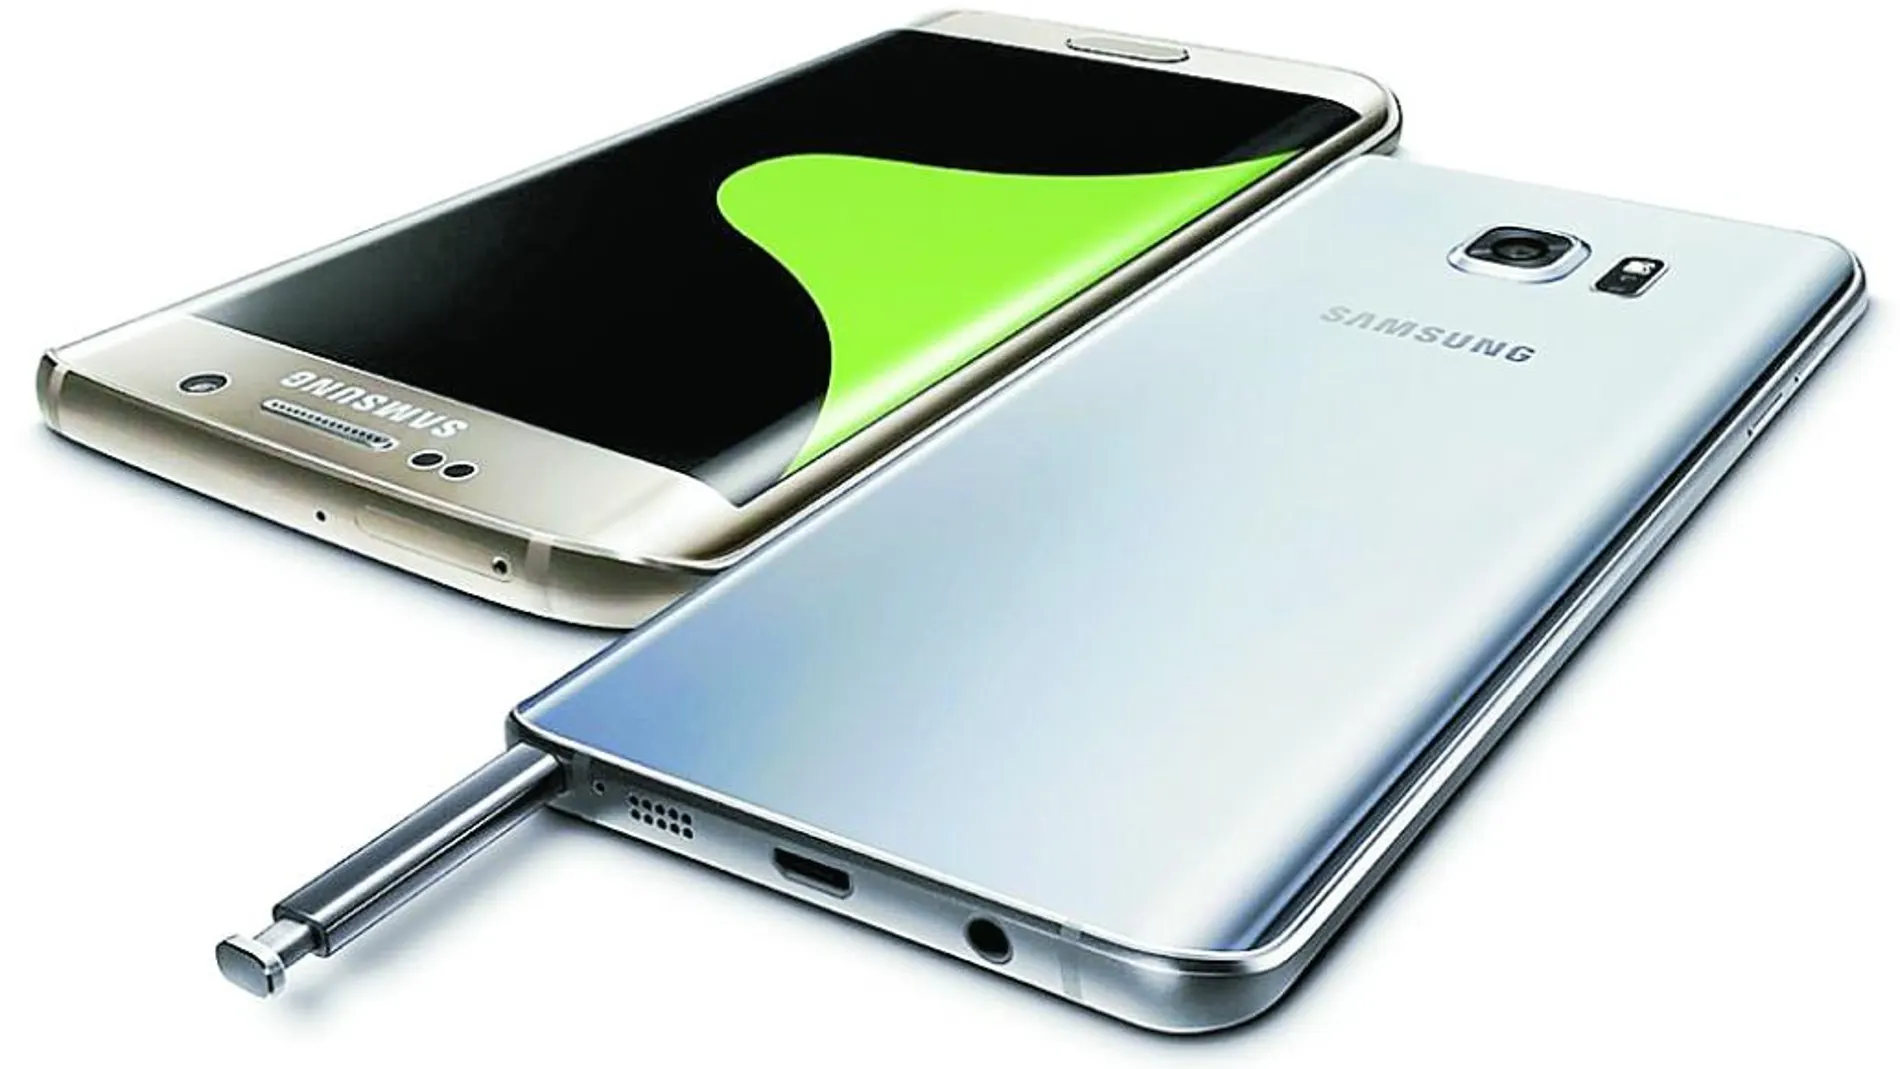 El modelo Galaxy S8